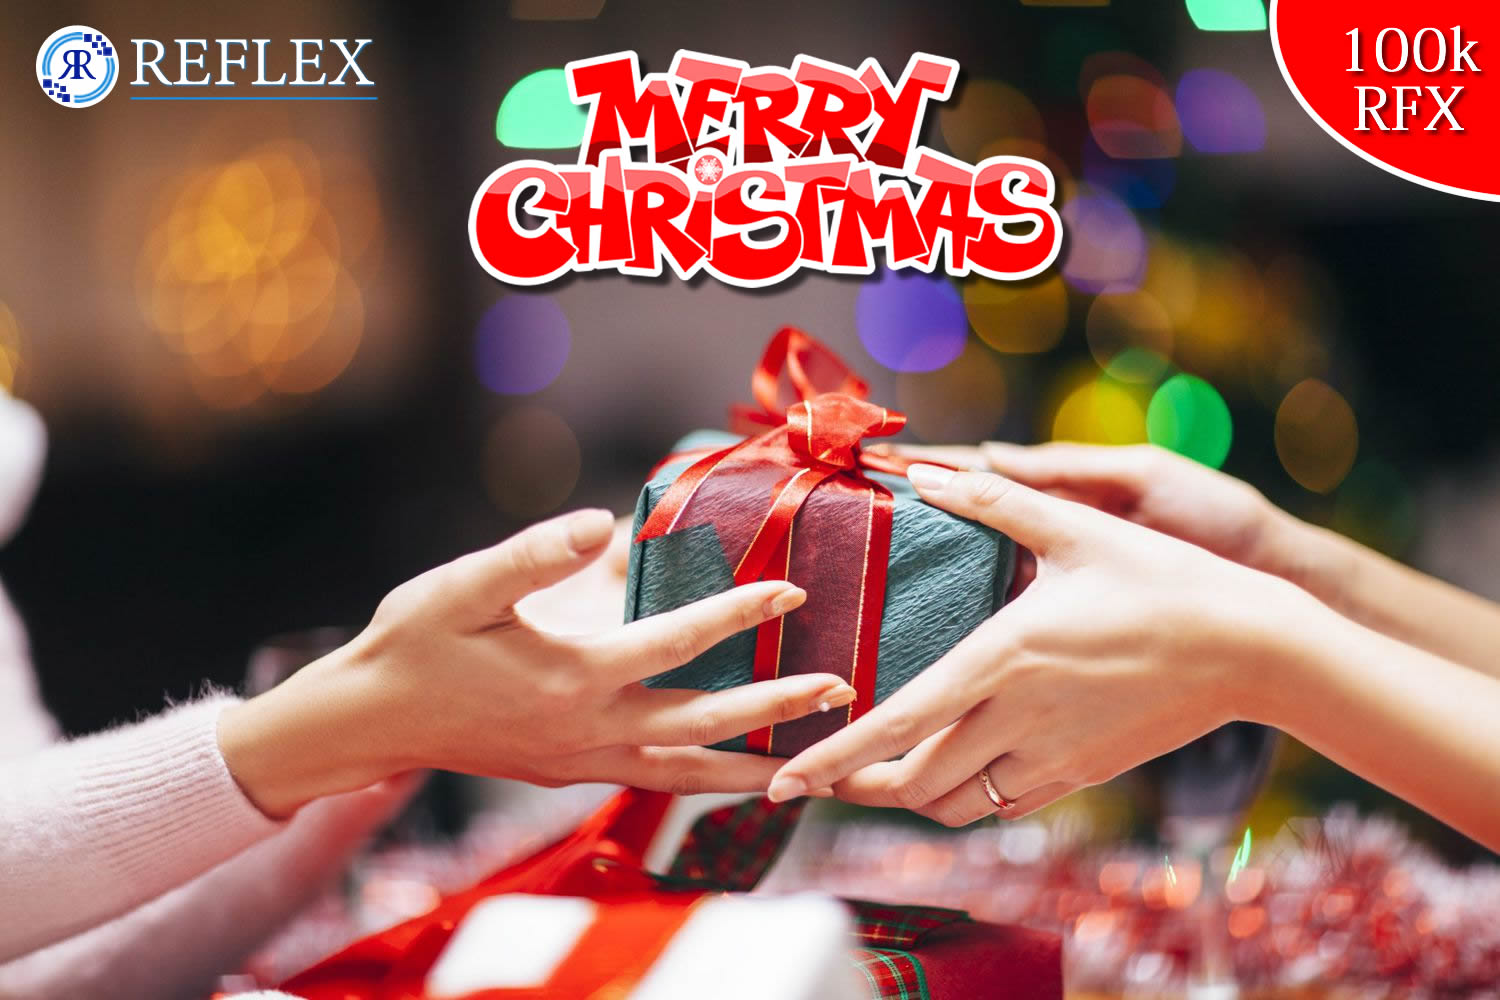 Christmas & NYE Giveaway (100k RFX)